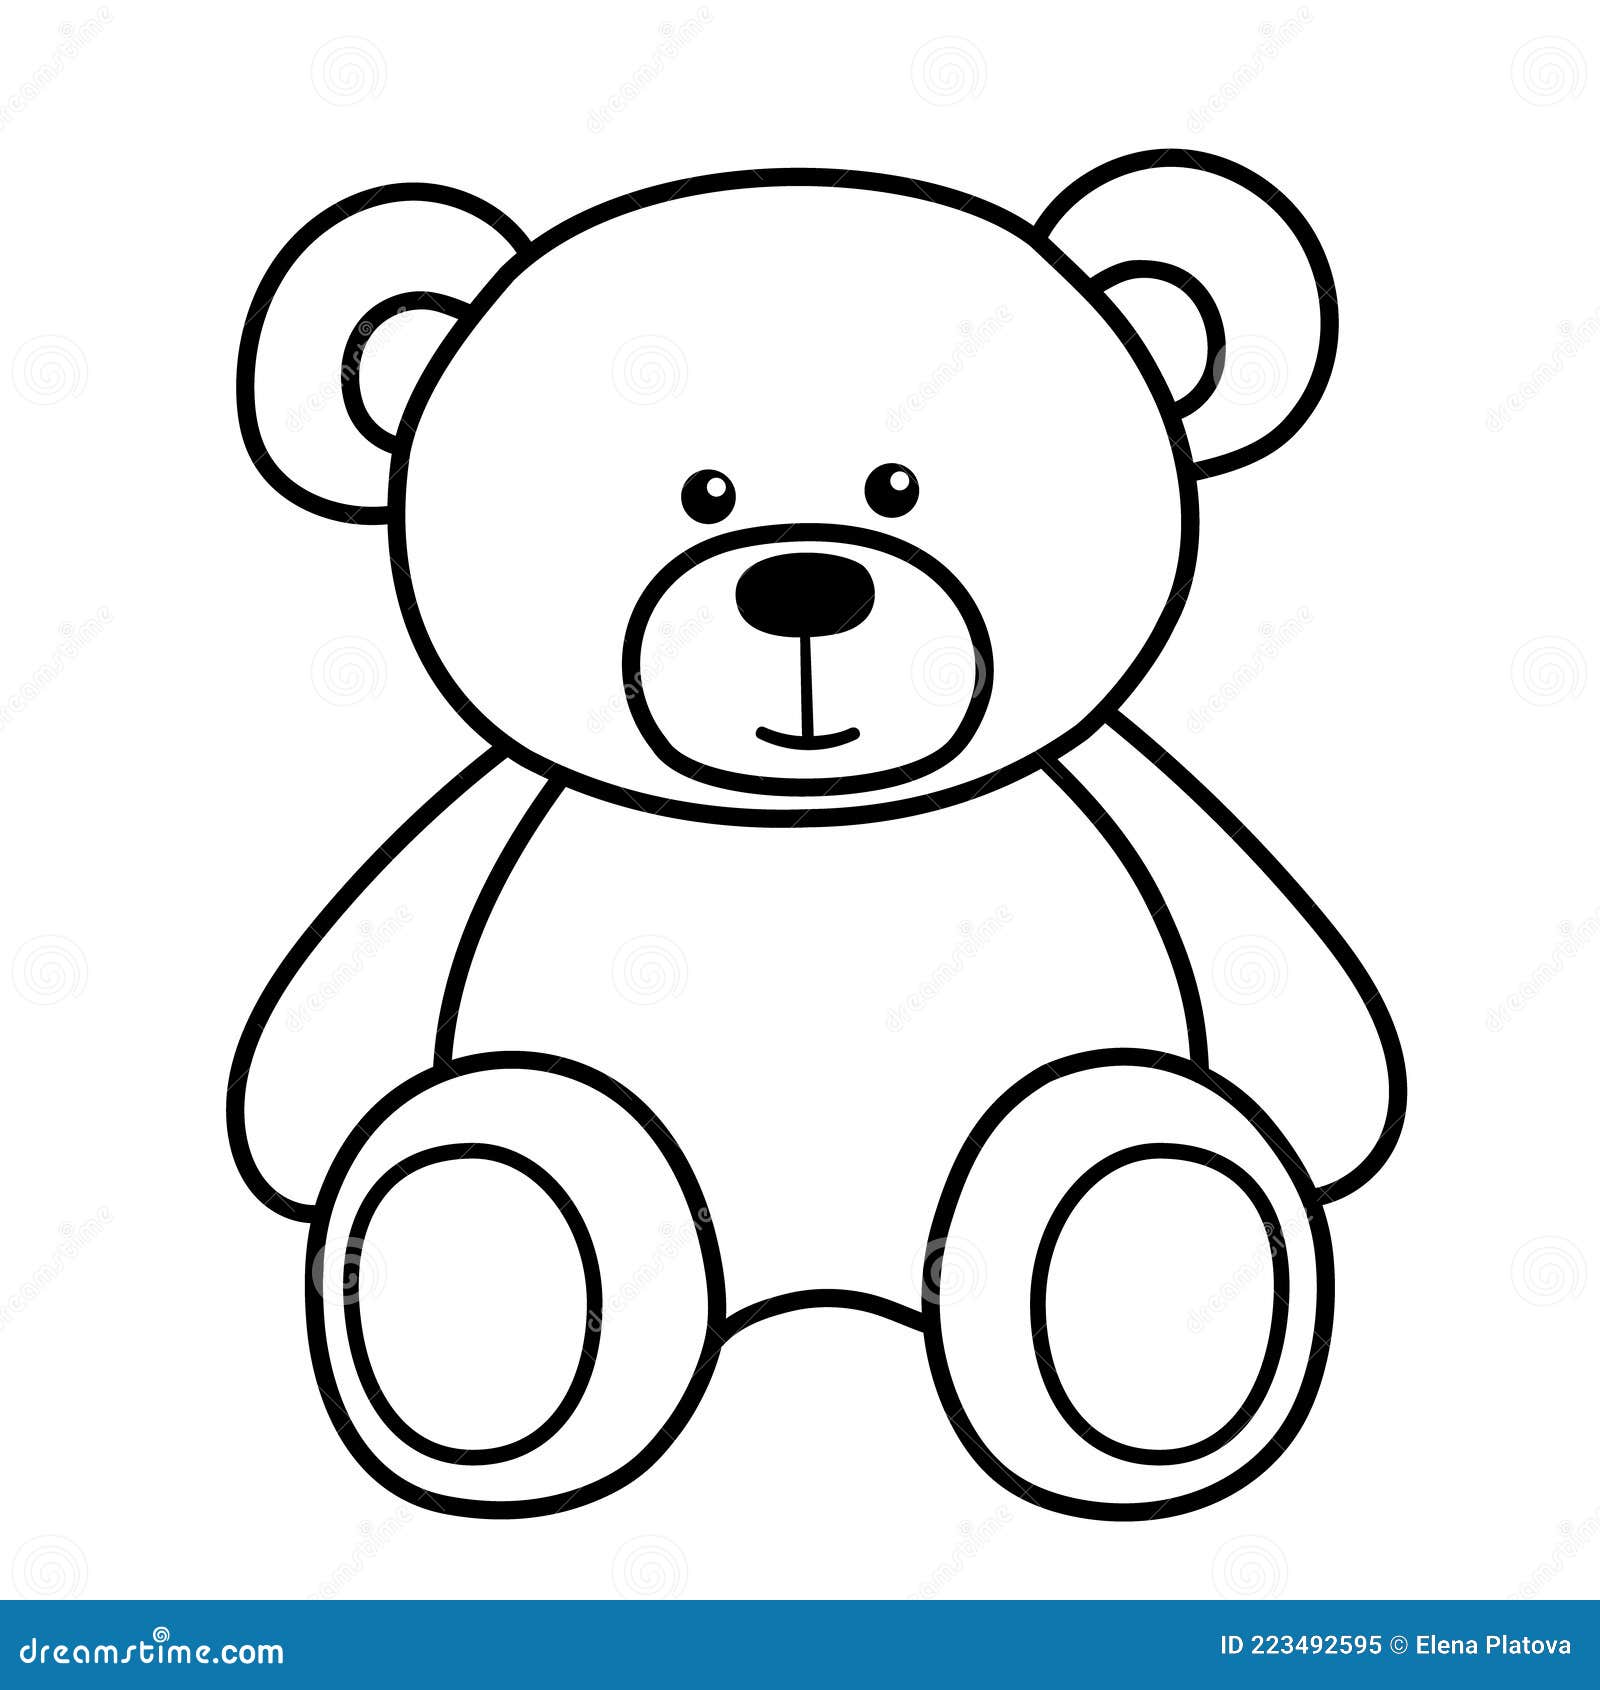 vector icon of a simple teddy bear on Craiyon